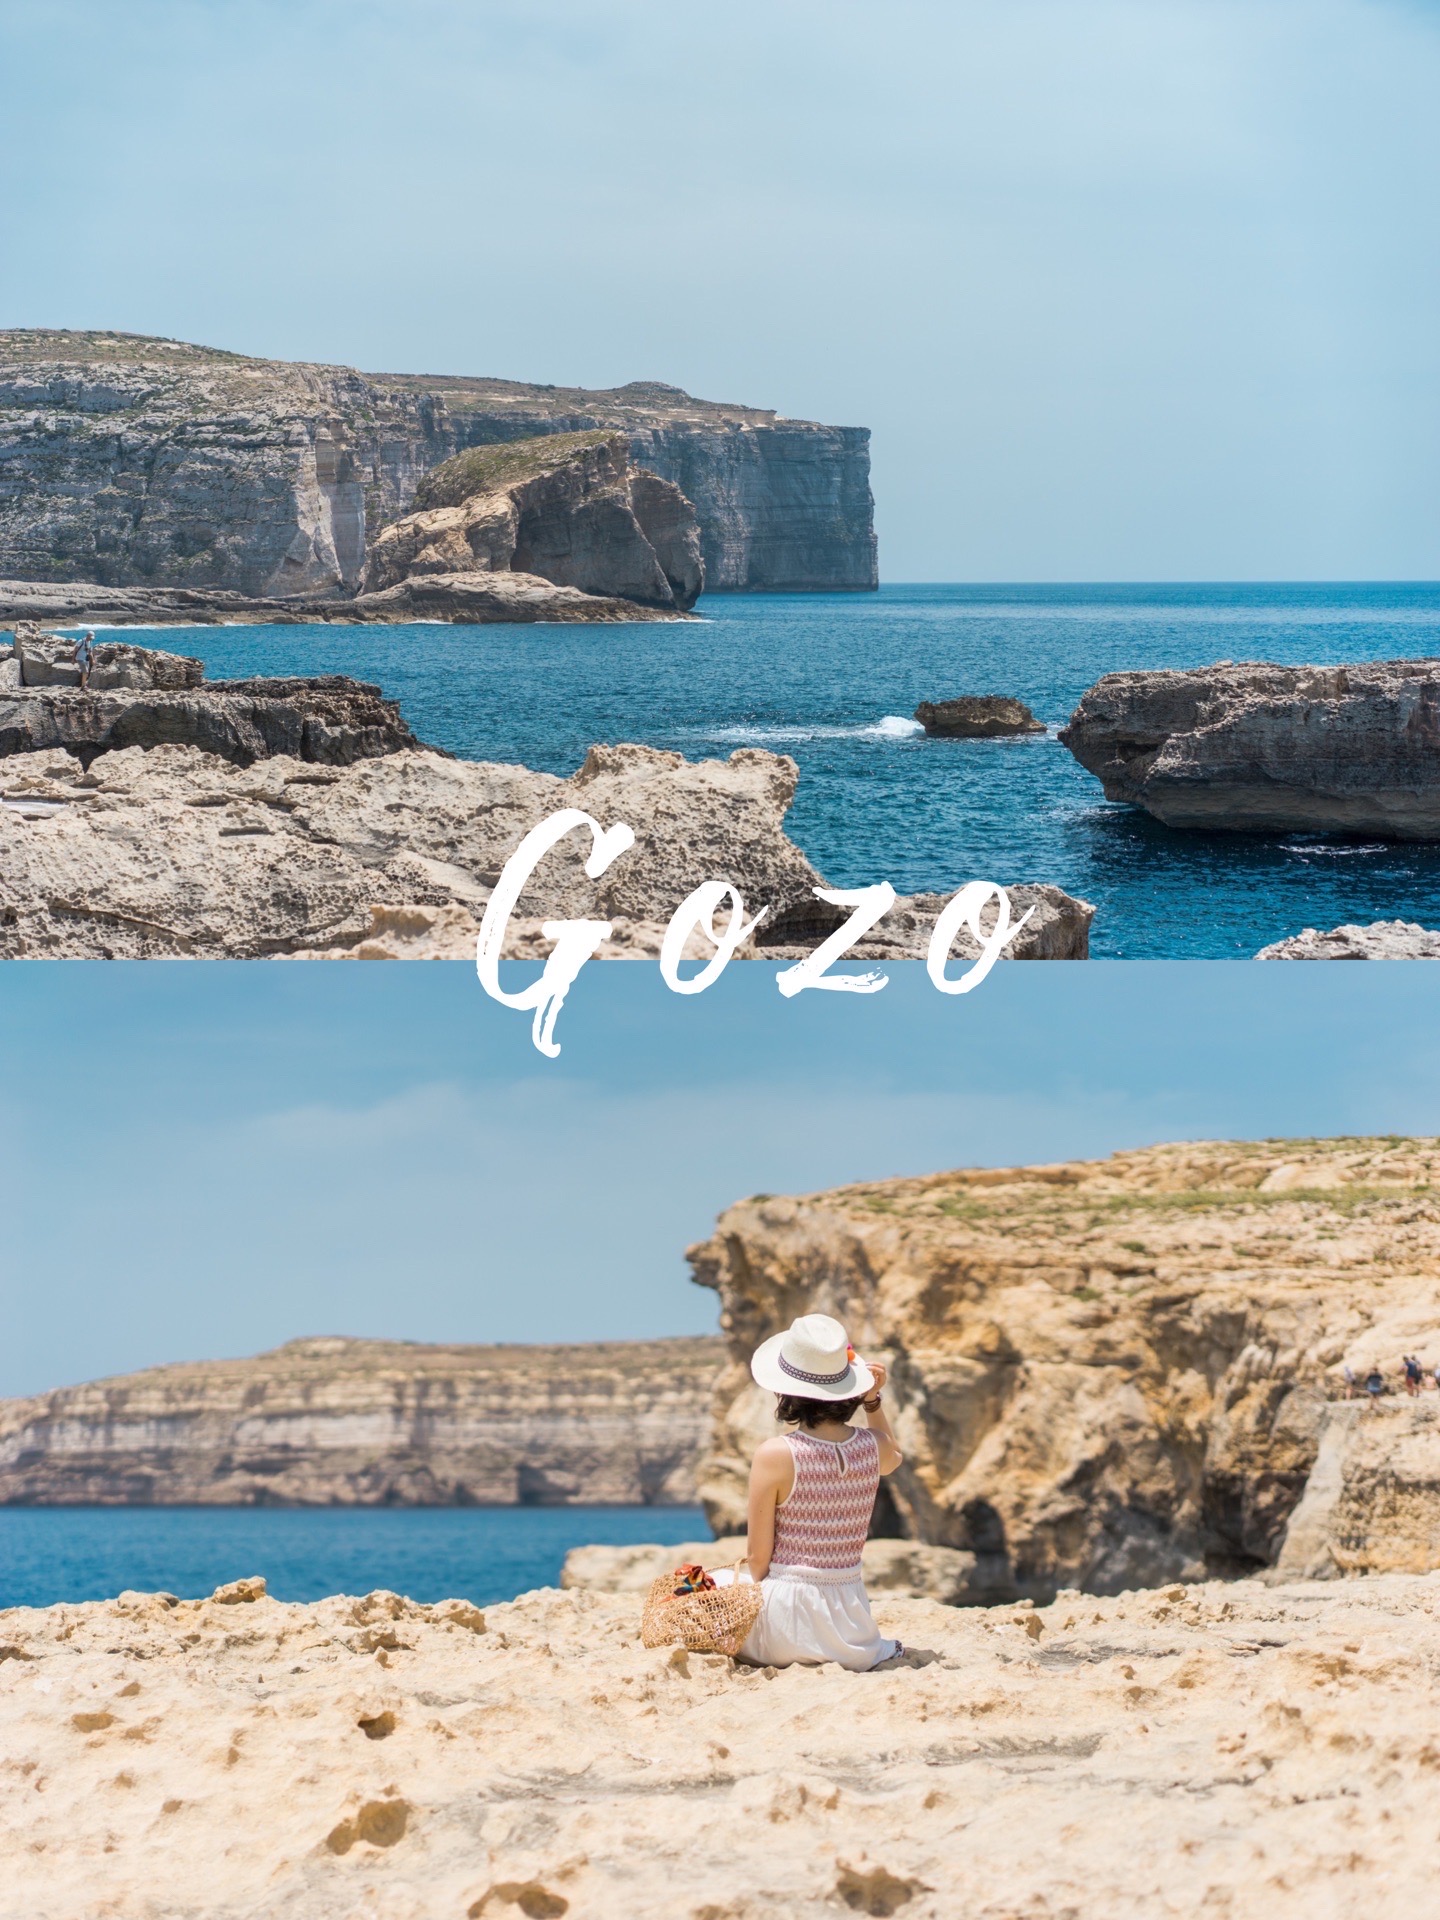 马耳他远离喧嚣的世外桃源 | Gozo岛 马耳他由三个岛组成，Gozo岛是🇲🇹第二大岛，是一座非常朴